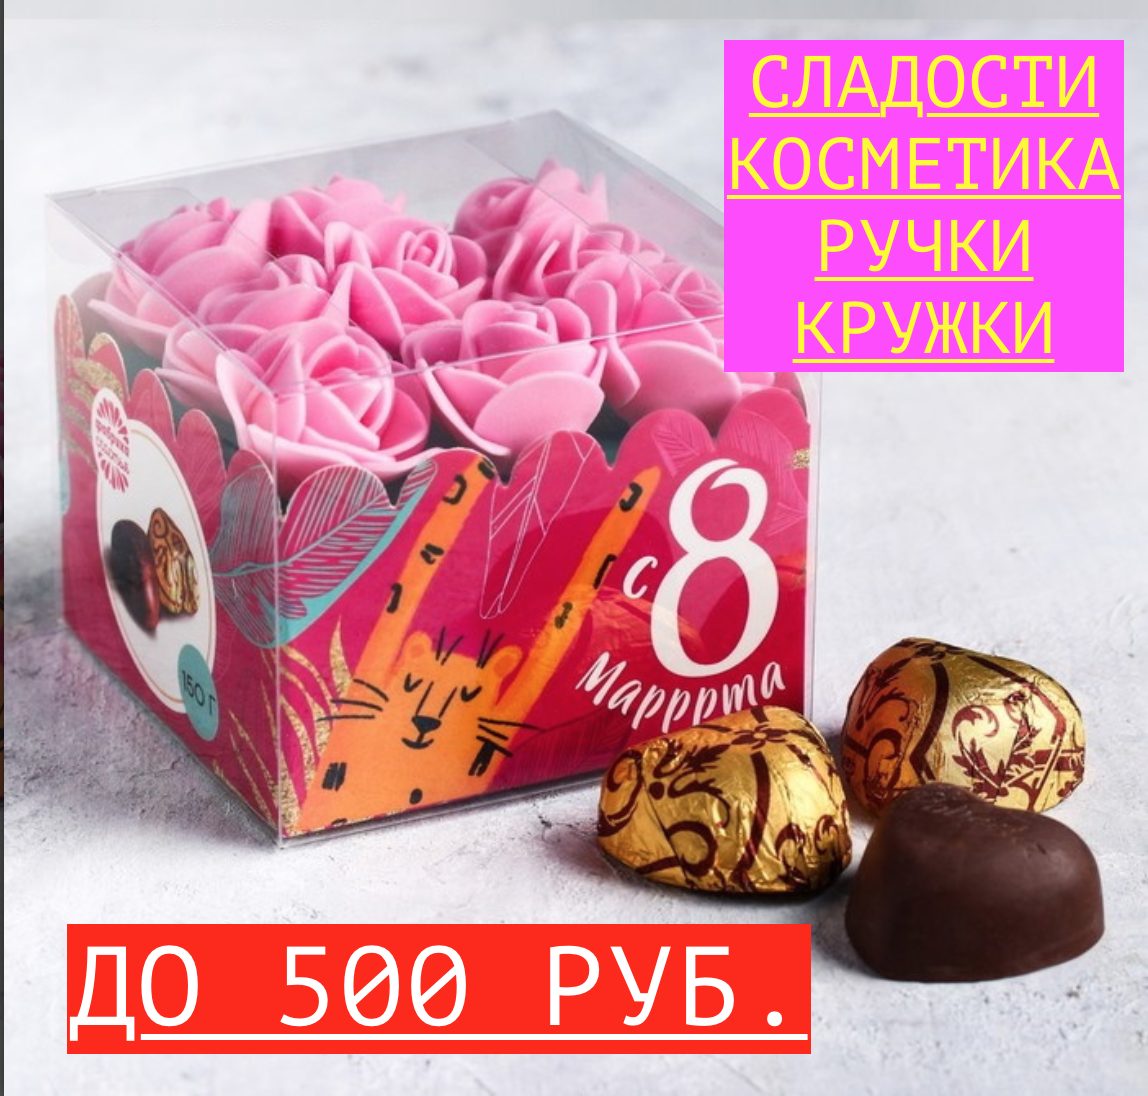 Недорогие подарки до 500 рублей на 8 марта